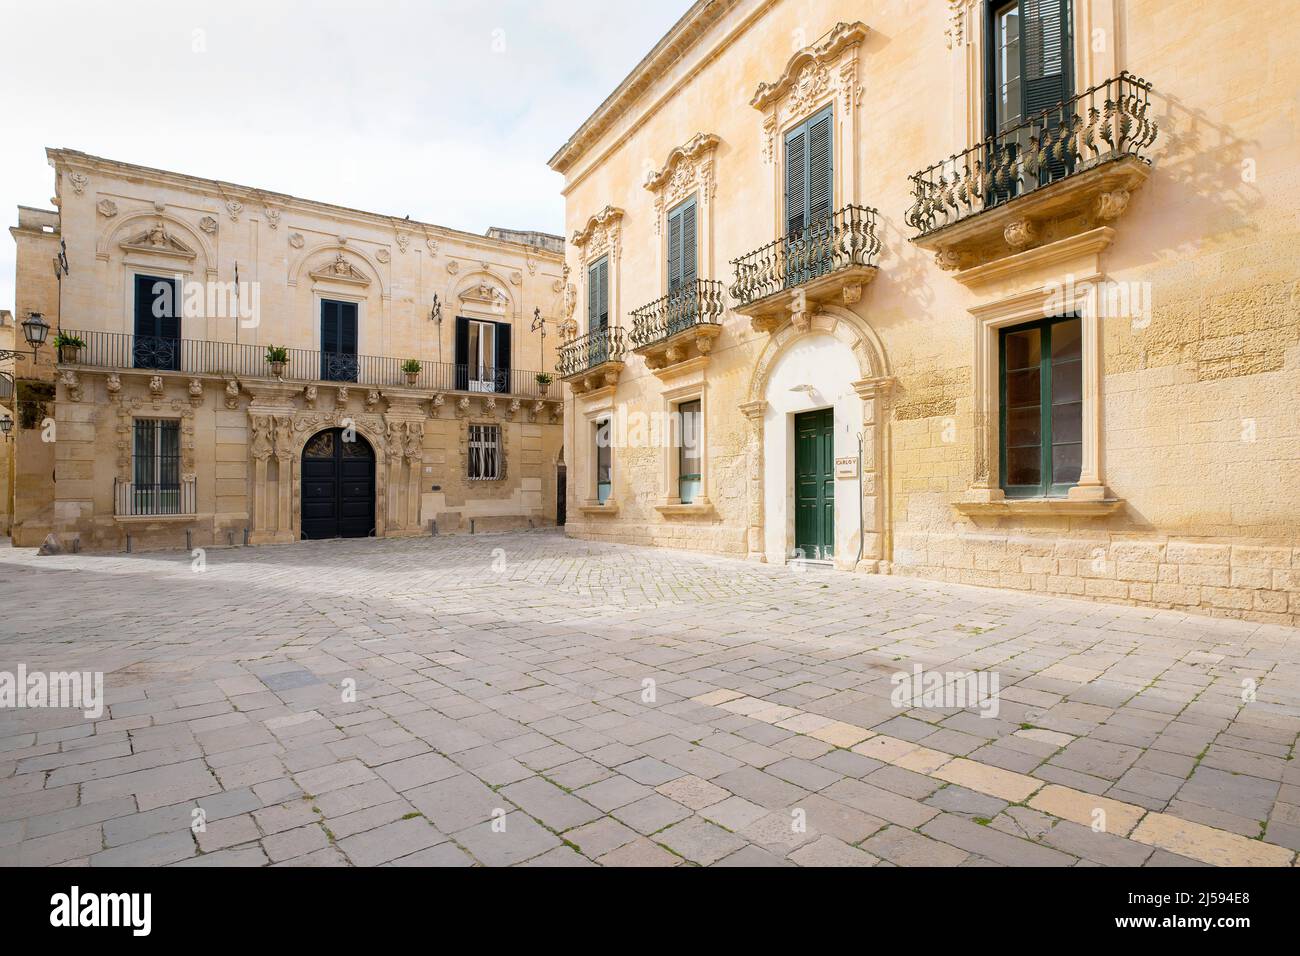 Il Palazzo Marrese è uno degli edifici in stile barocco più suggestivi di Lecce. Situato nella piazzetta Ignazio Falconieri, l'edificio ha un incredibile Foto Stock